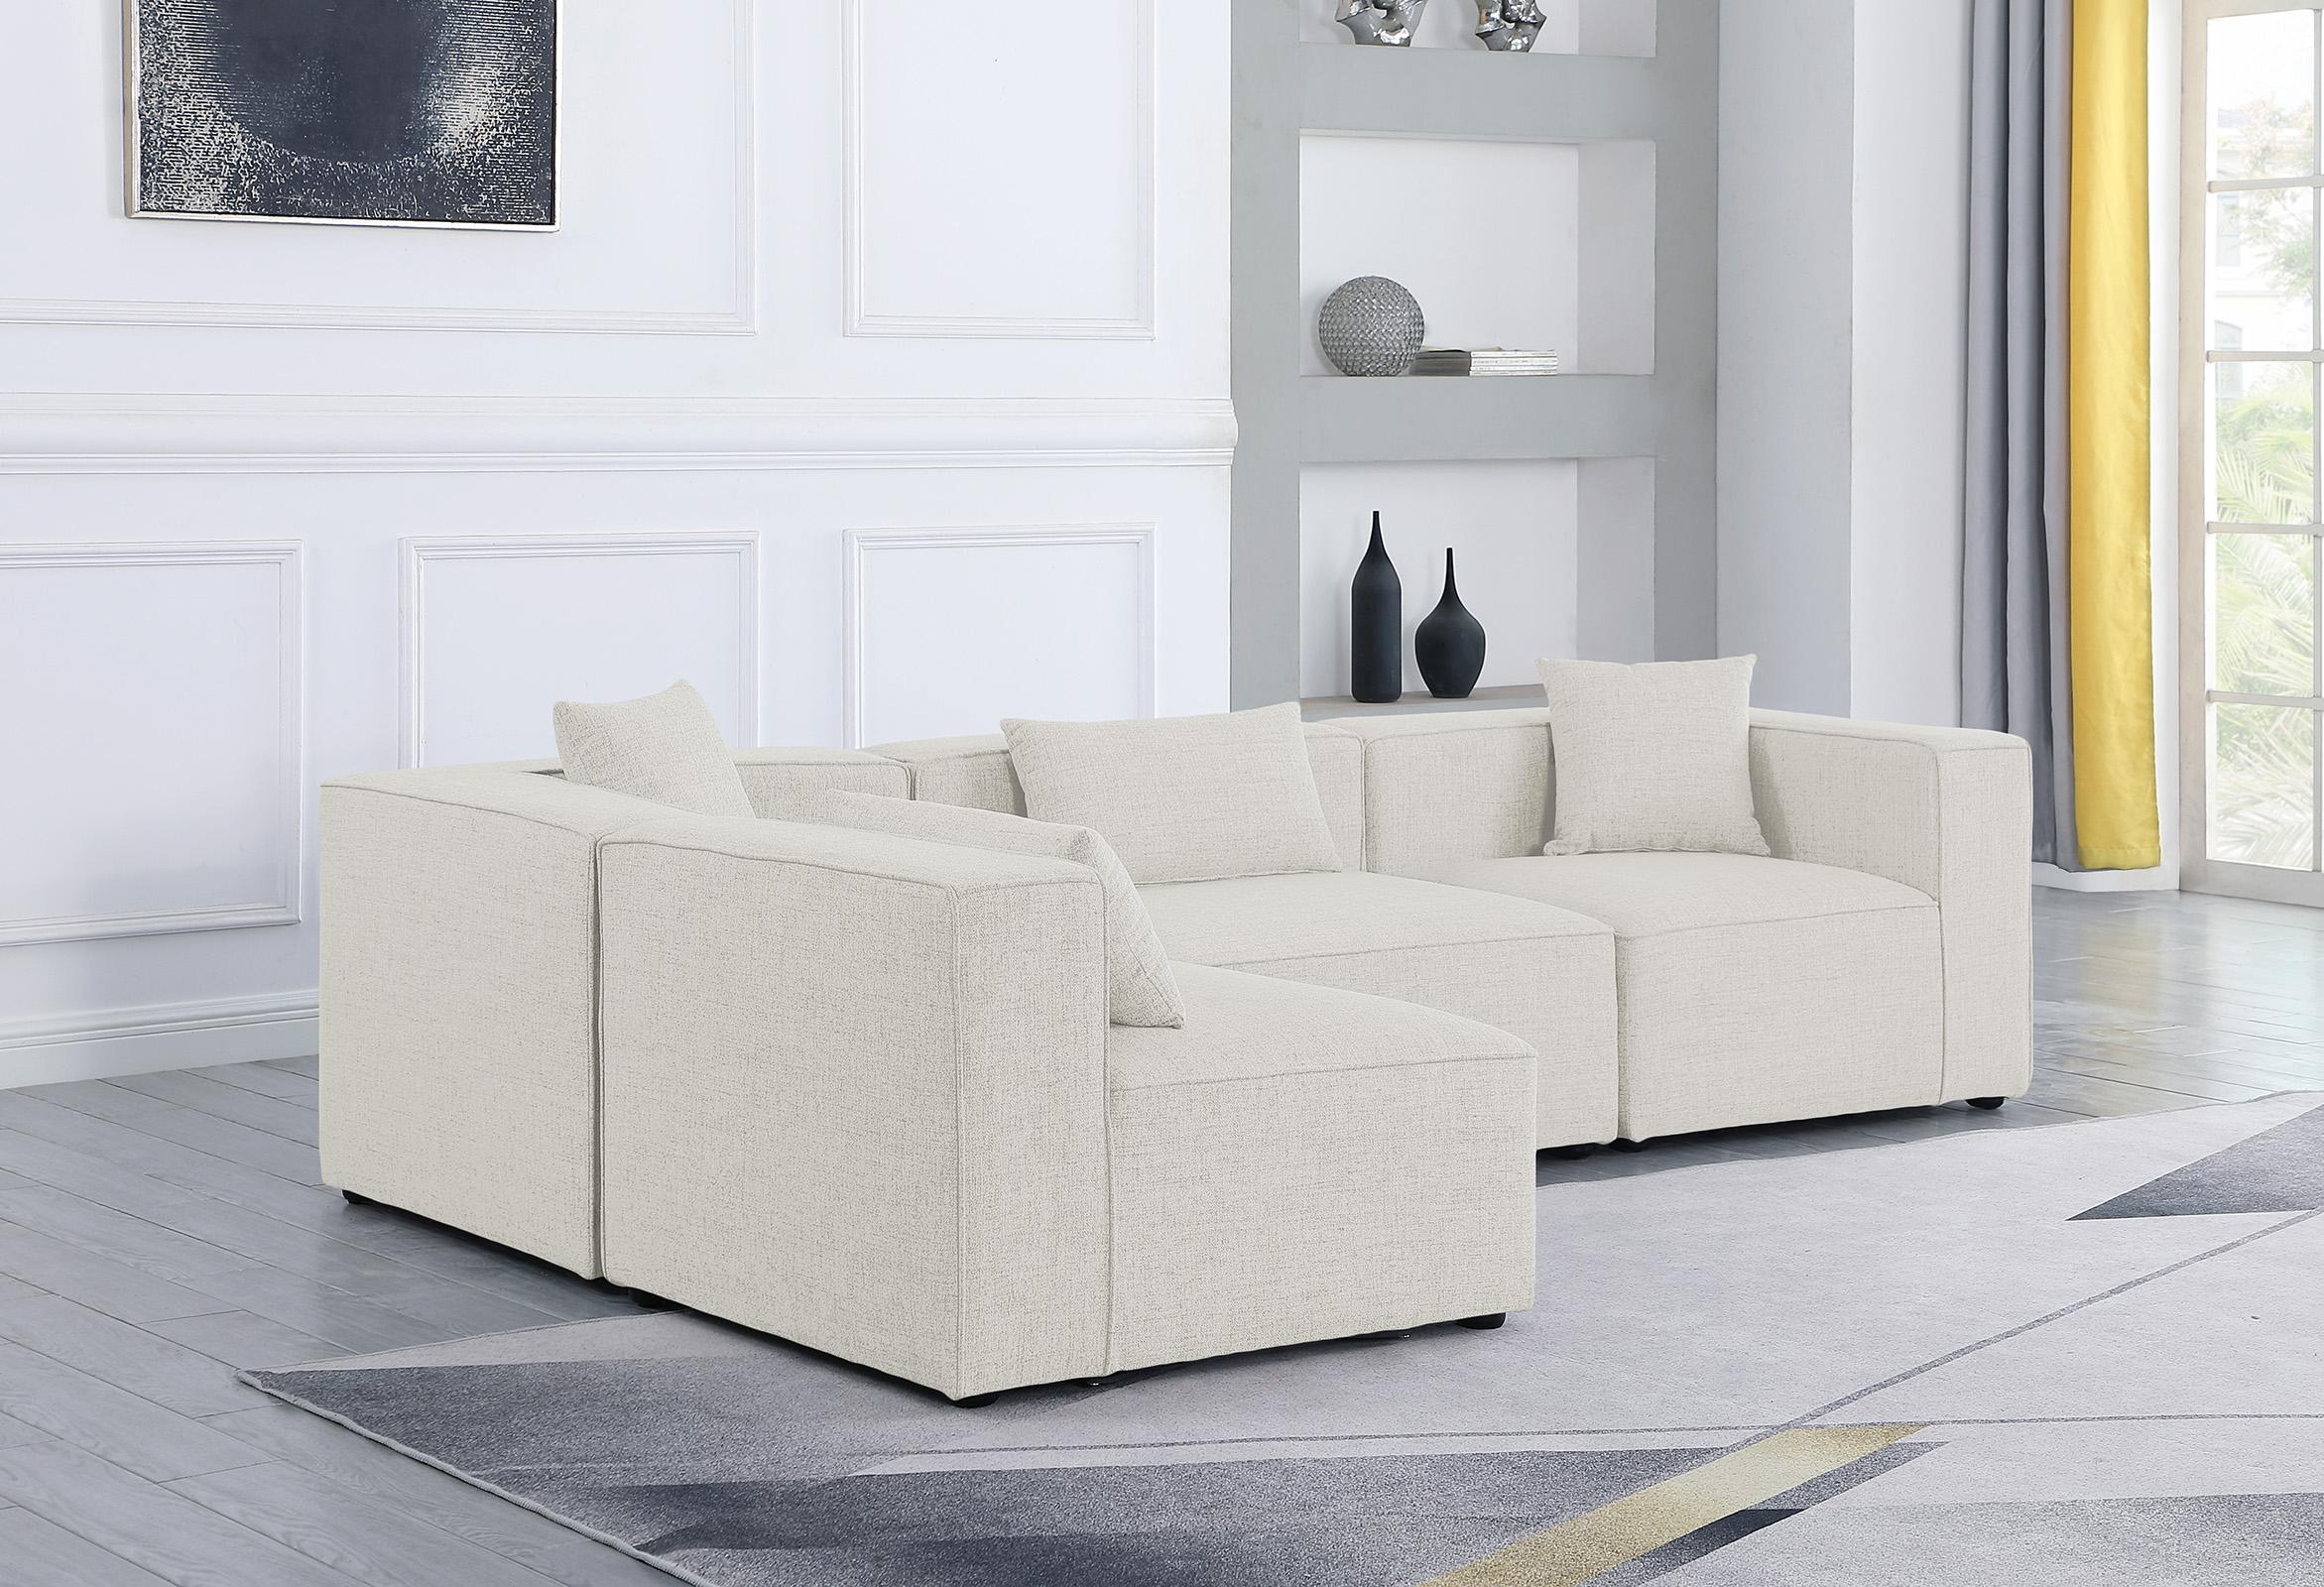 

    
Meridian Furniture CUBE 630Cream-Sec4B Modular Sectional Sofa Cream 630Cream-Sec4B
